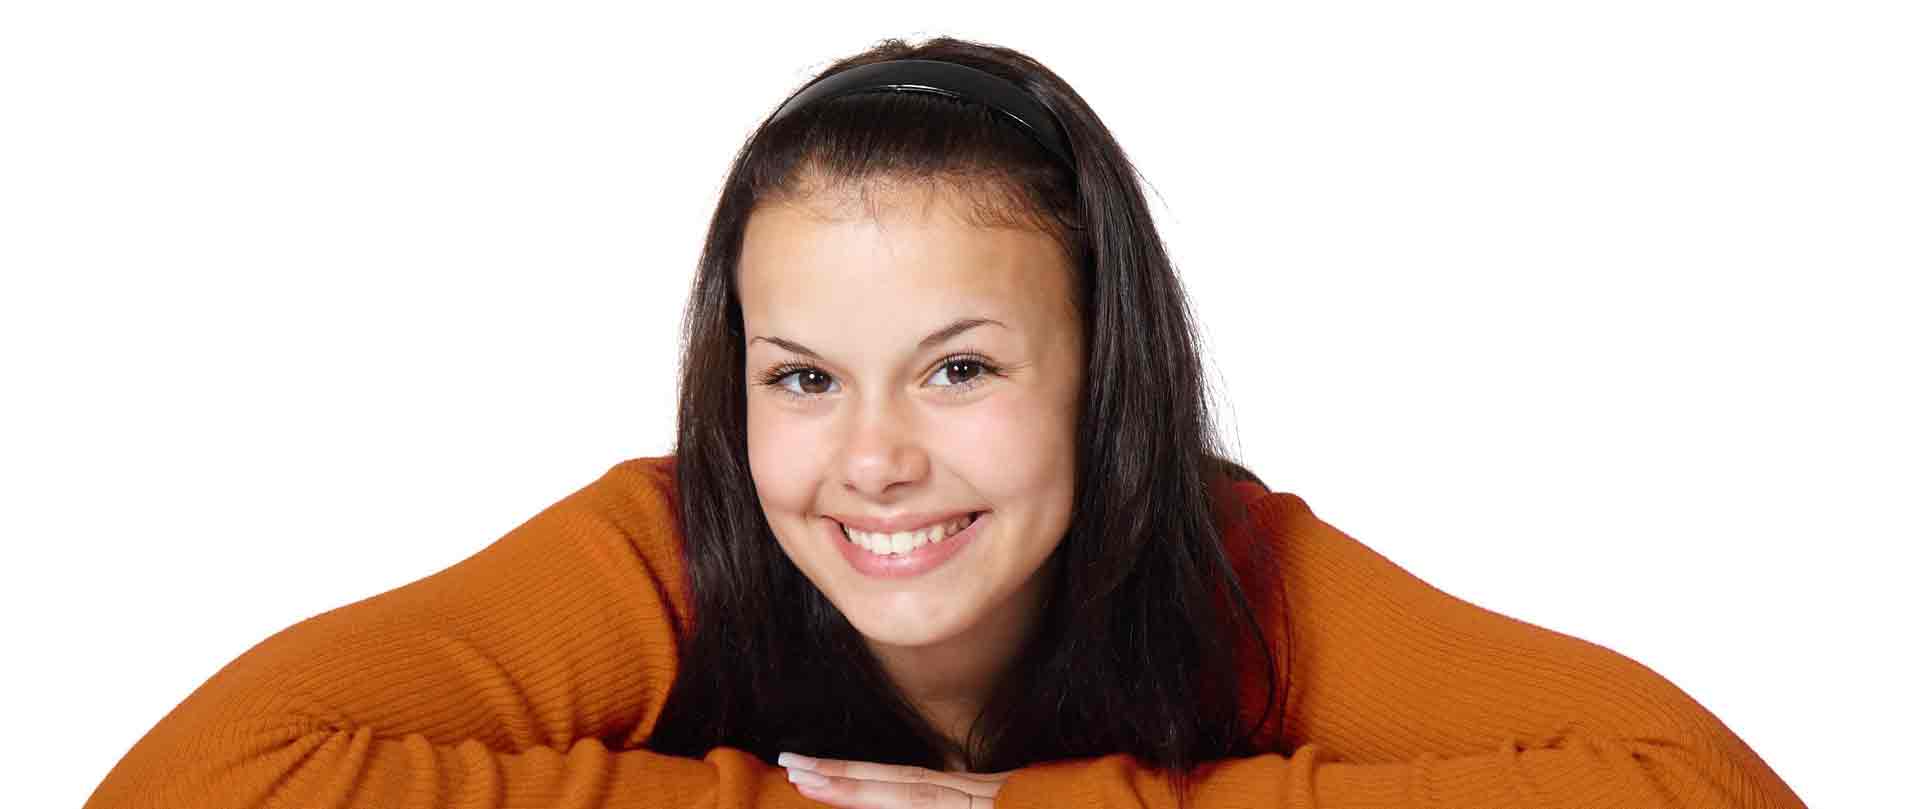 girl in orange sweater smiling